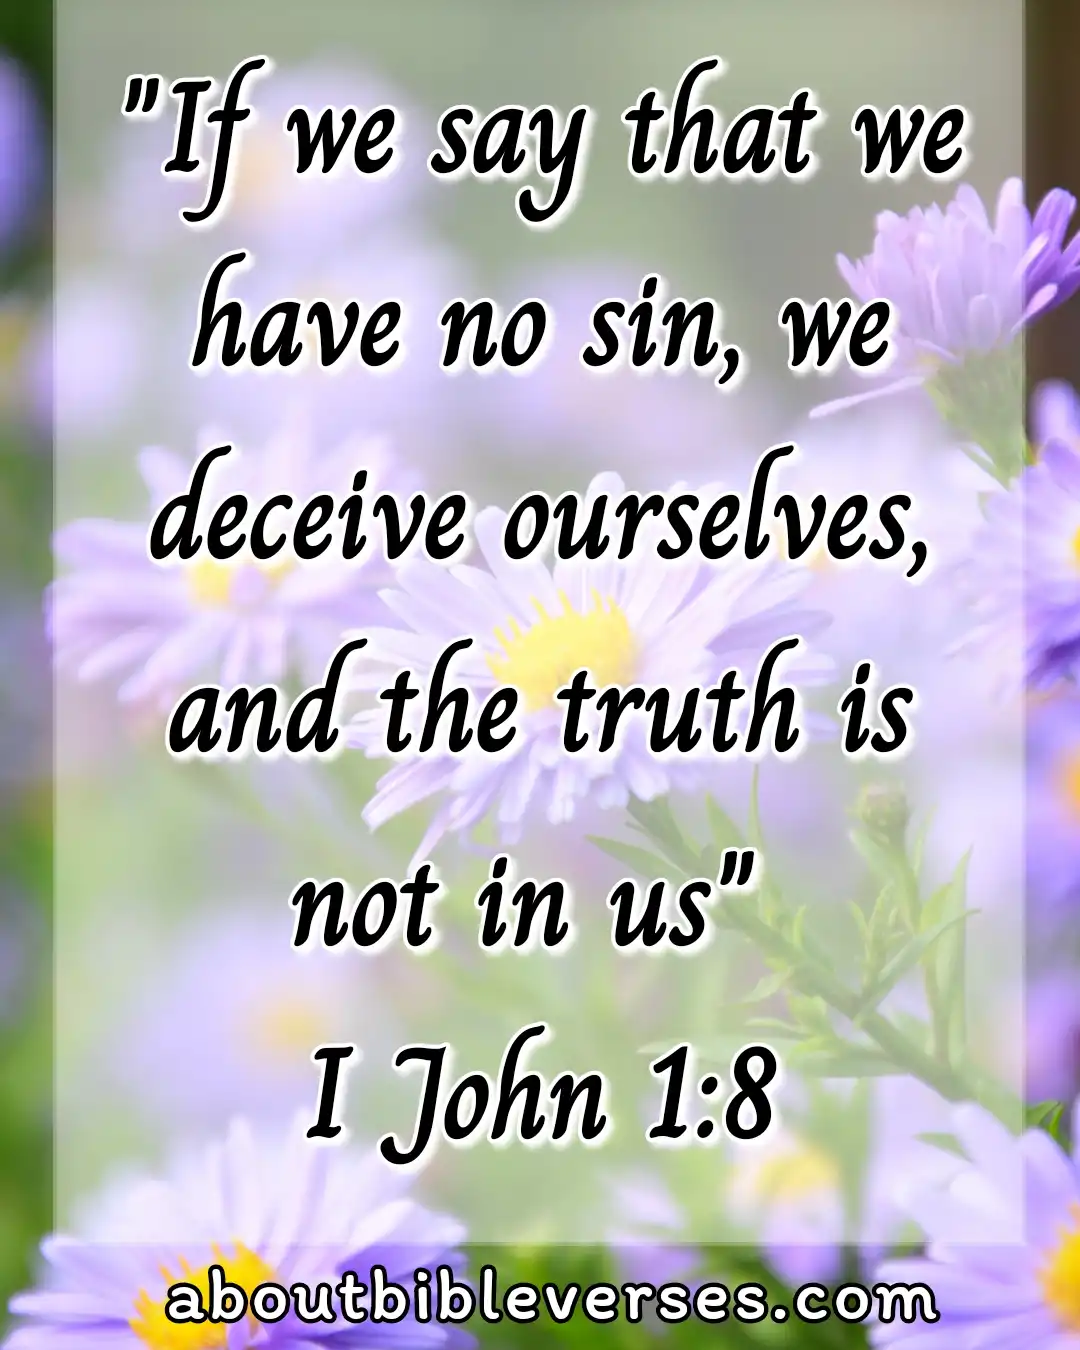 Bible Verses About Self-Awareness (1 John 1:8)